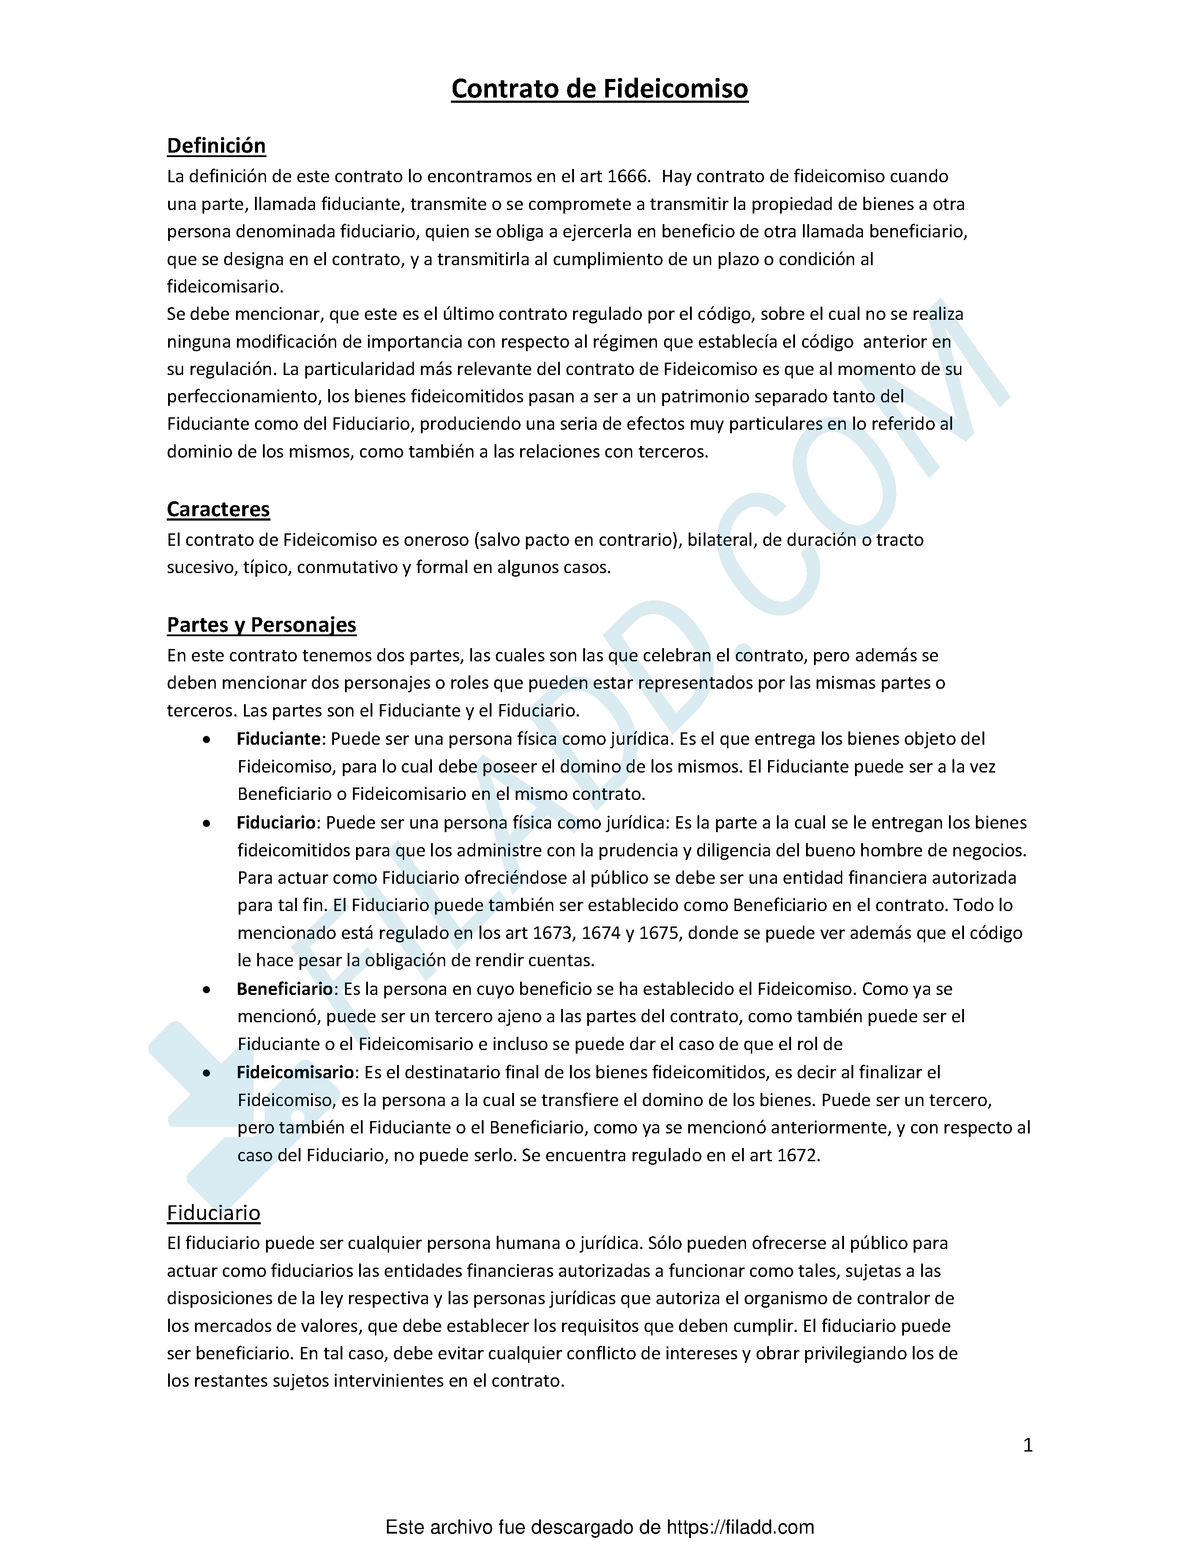 Contrato de fideicomiso - Derecho comercial y contratos - UNC - Studocu